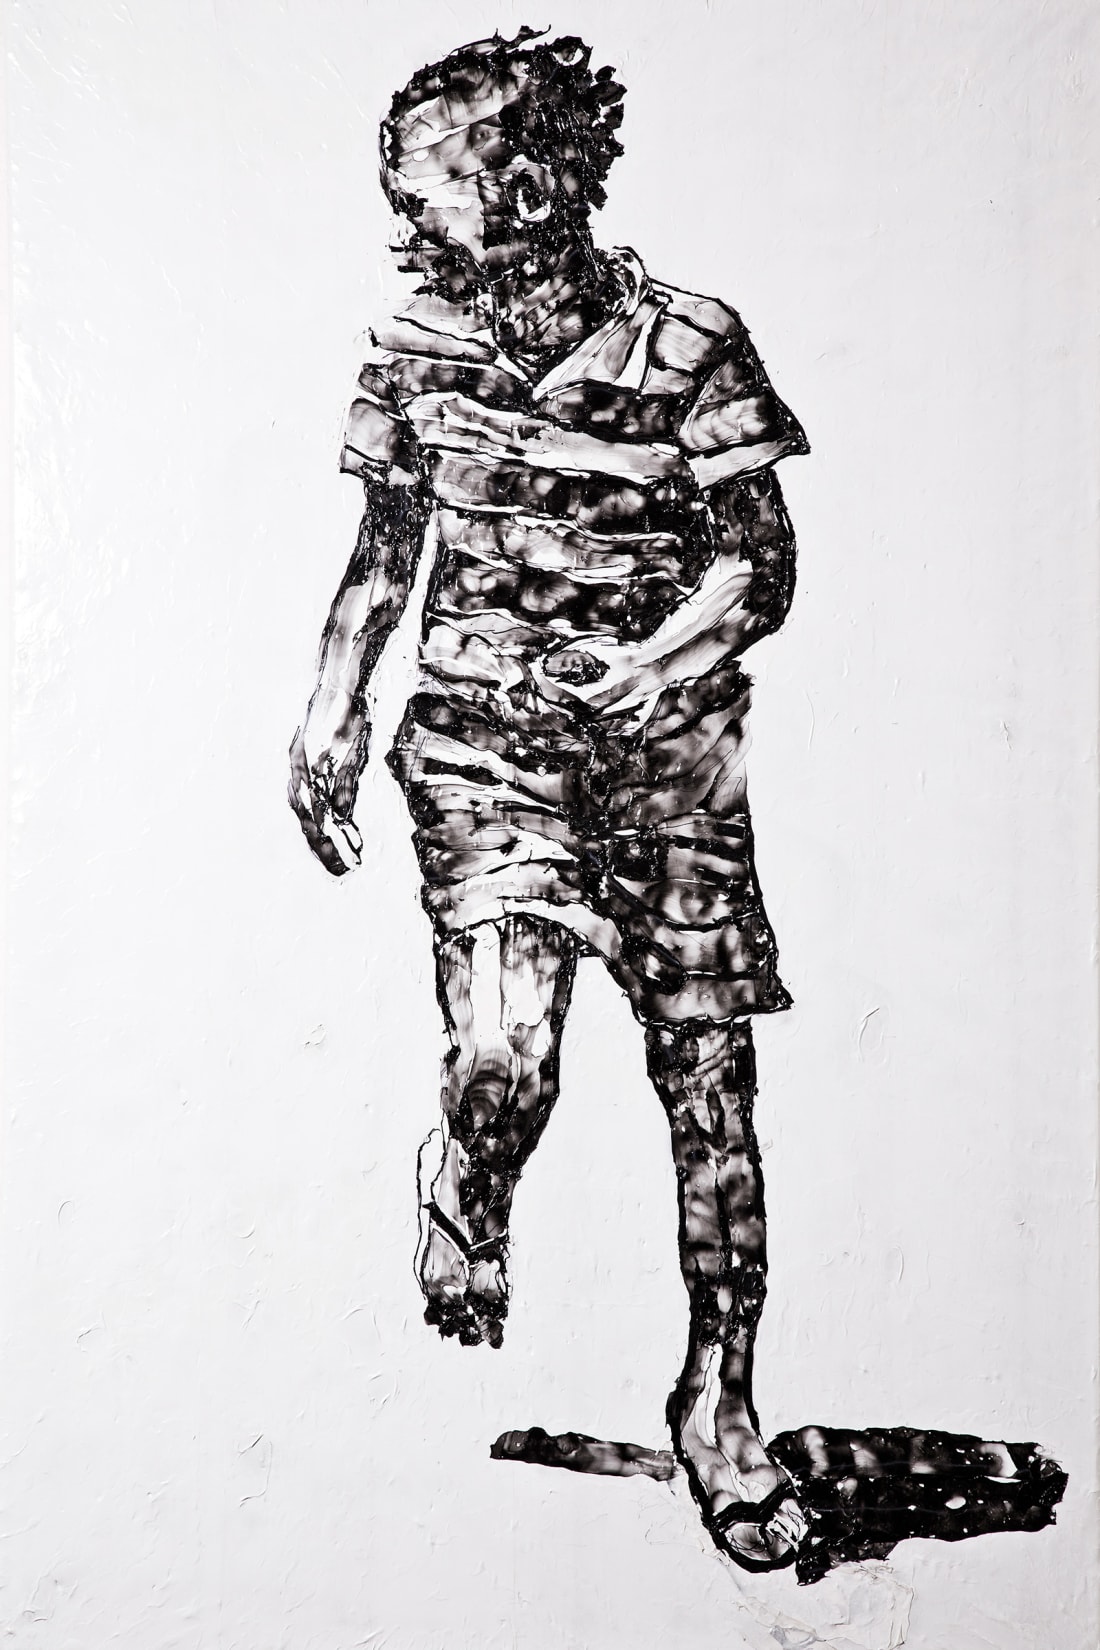 Họa sĩ Nam Phi vẽ tranh từ rác thải nhựa, kết quả là những tác phẩm kinh ngạc đến mức khó tin - Ảnh 3.